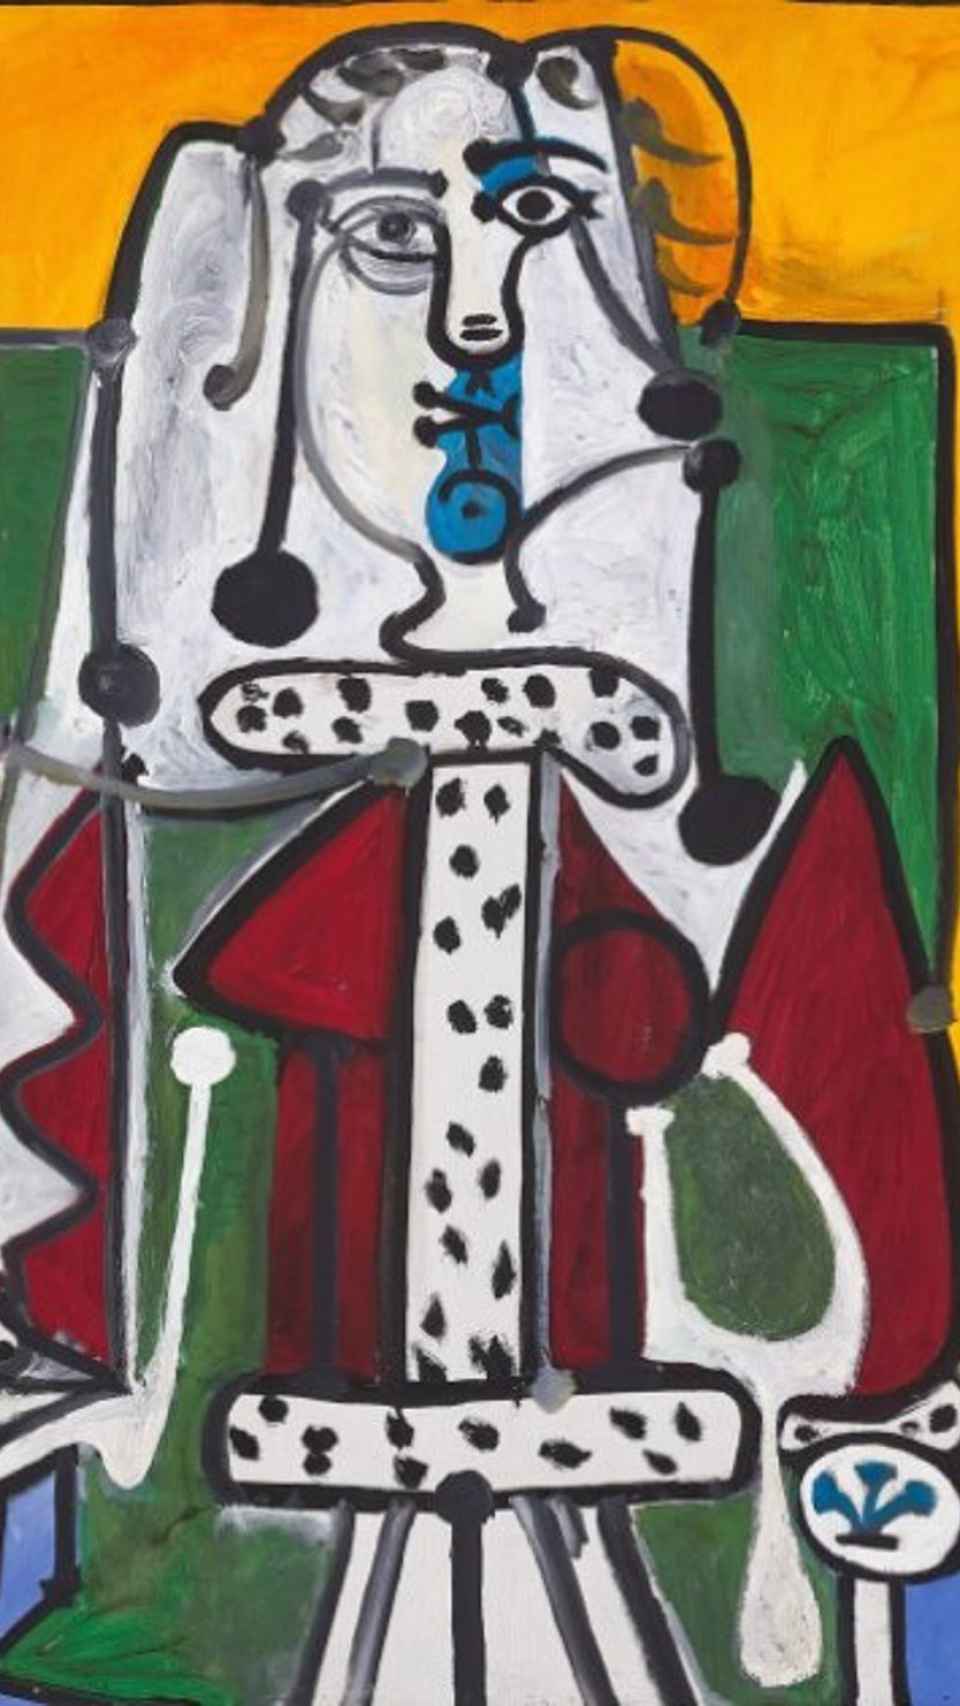 'Mujer en un sillón', de Picasso, inspirado en Françoise Gilot  - SOTHEBY'S